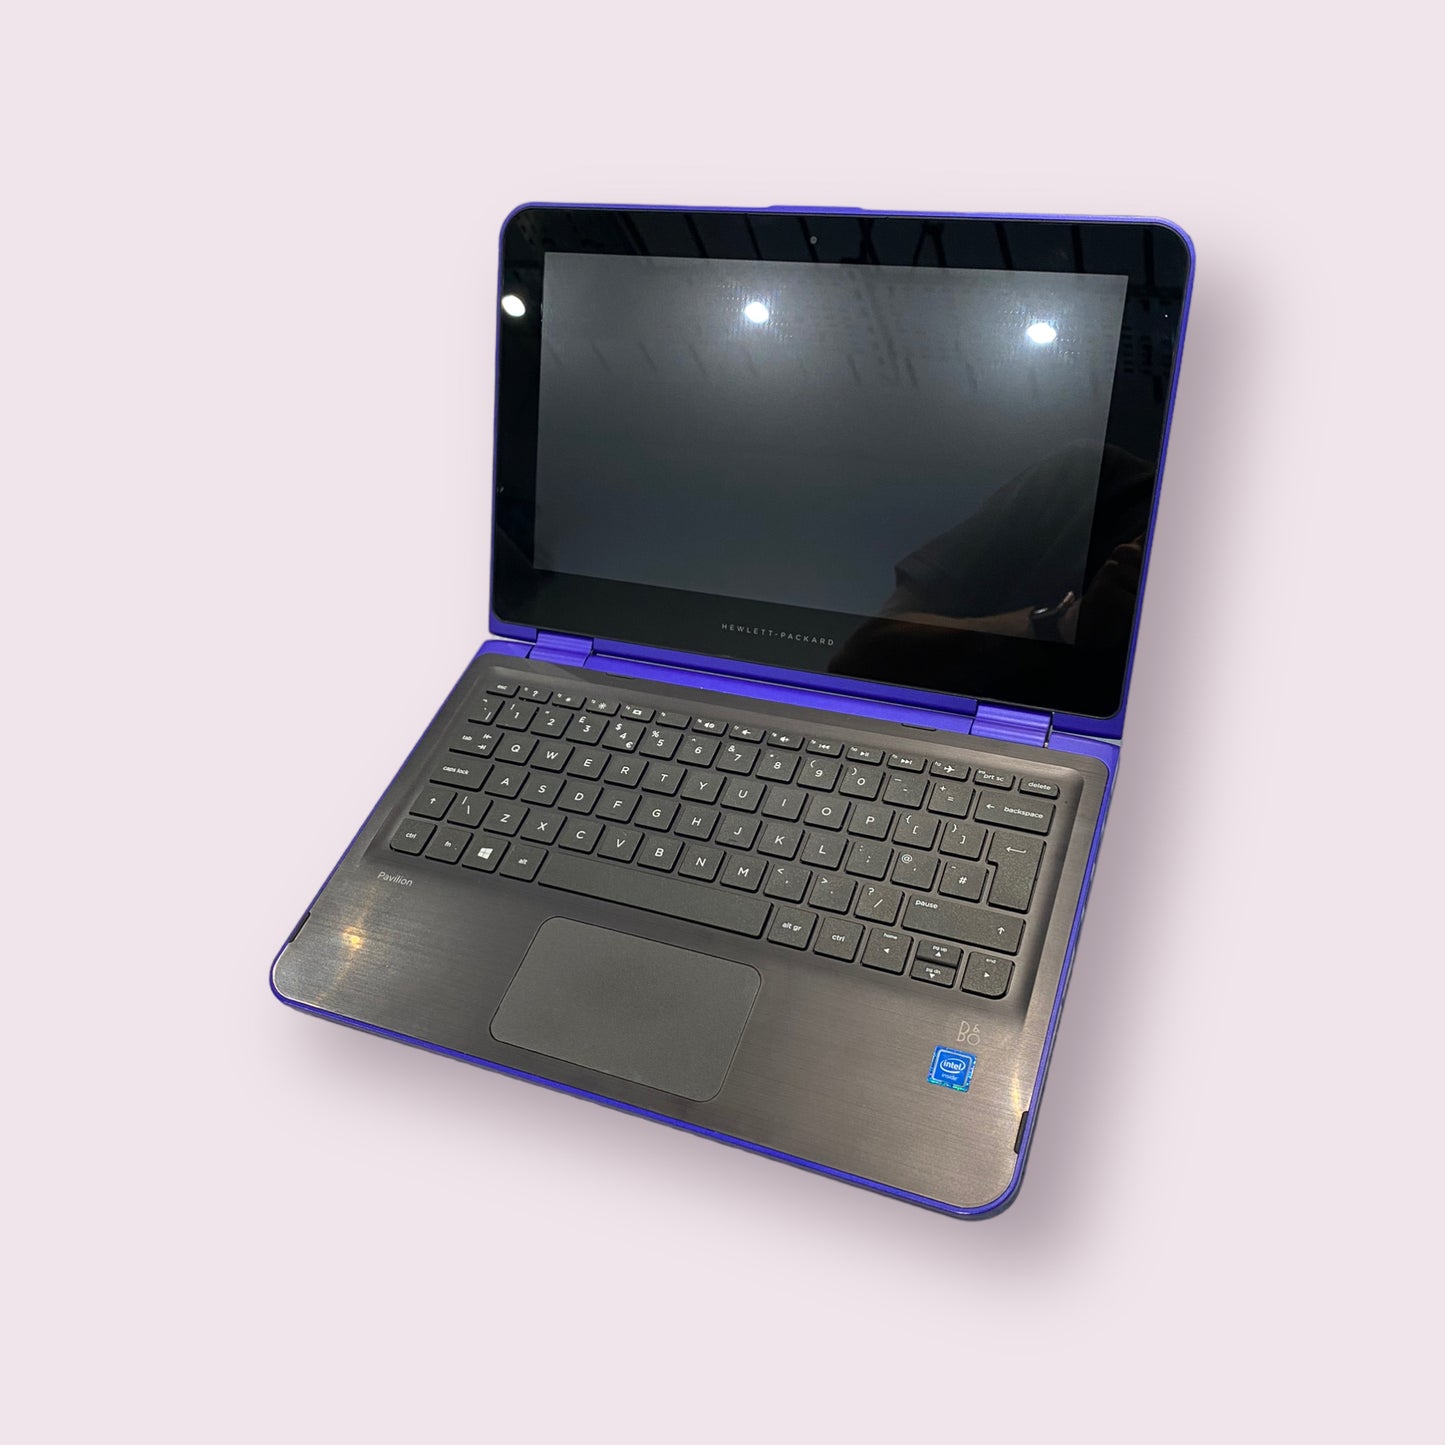 HP Pavilion 11" 11-k154sa Windows 10 Laptop - 4GB RAM - 240GB SSD - Celeron CPU - Purple - Grade B